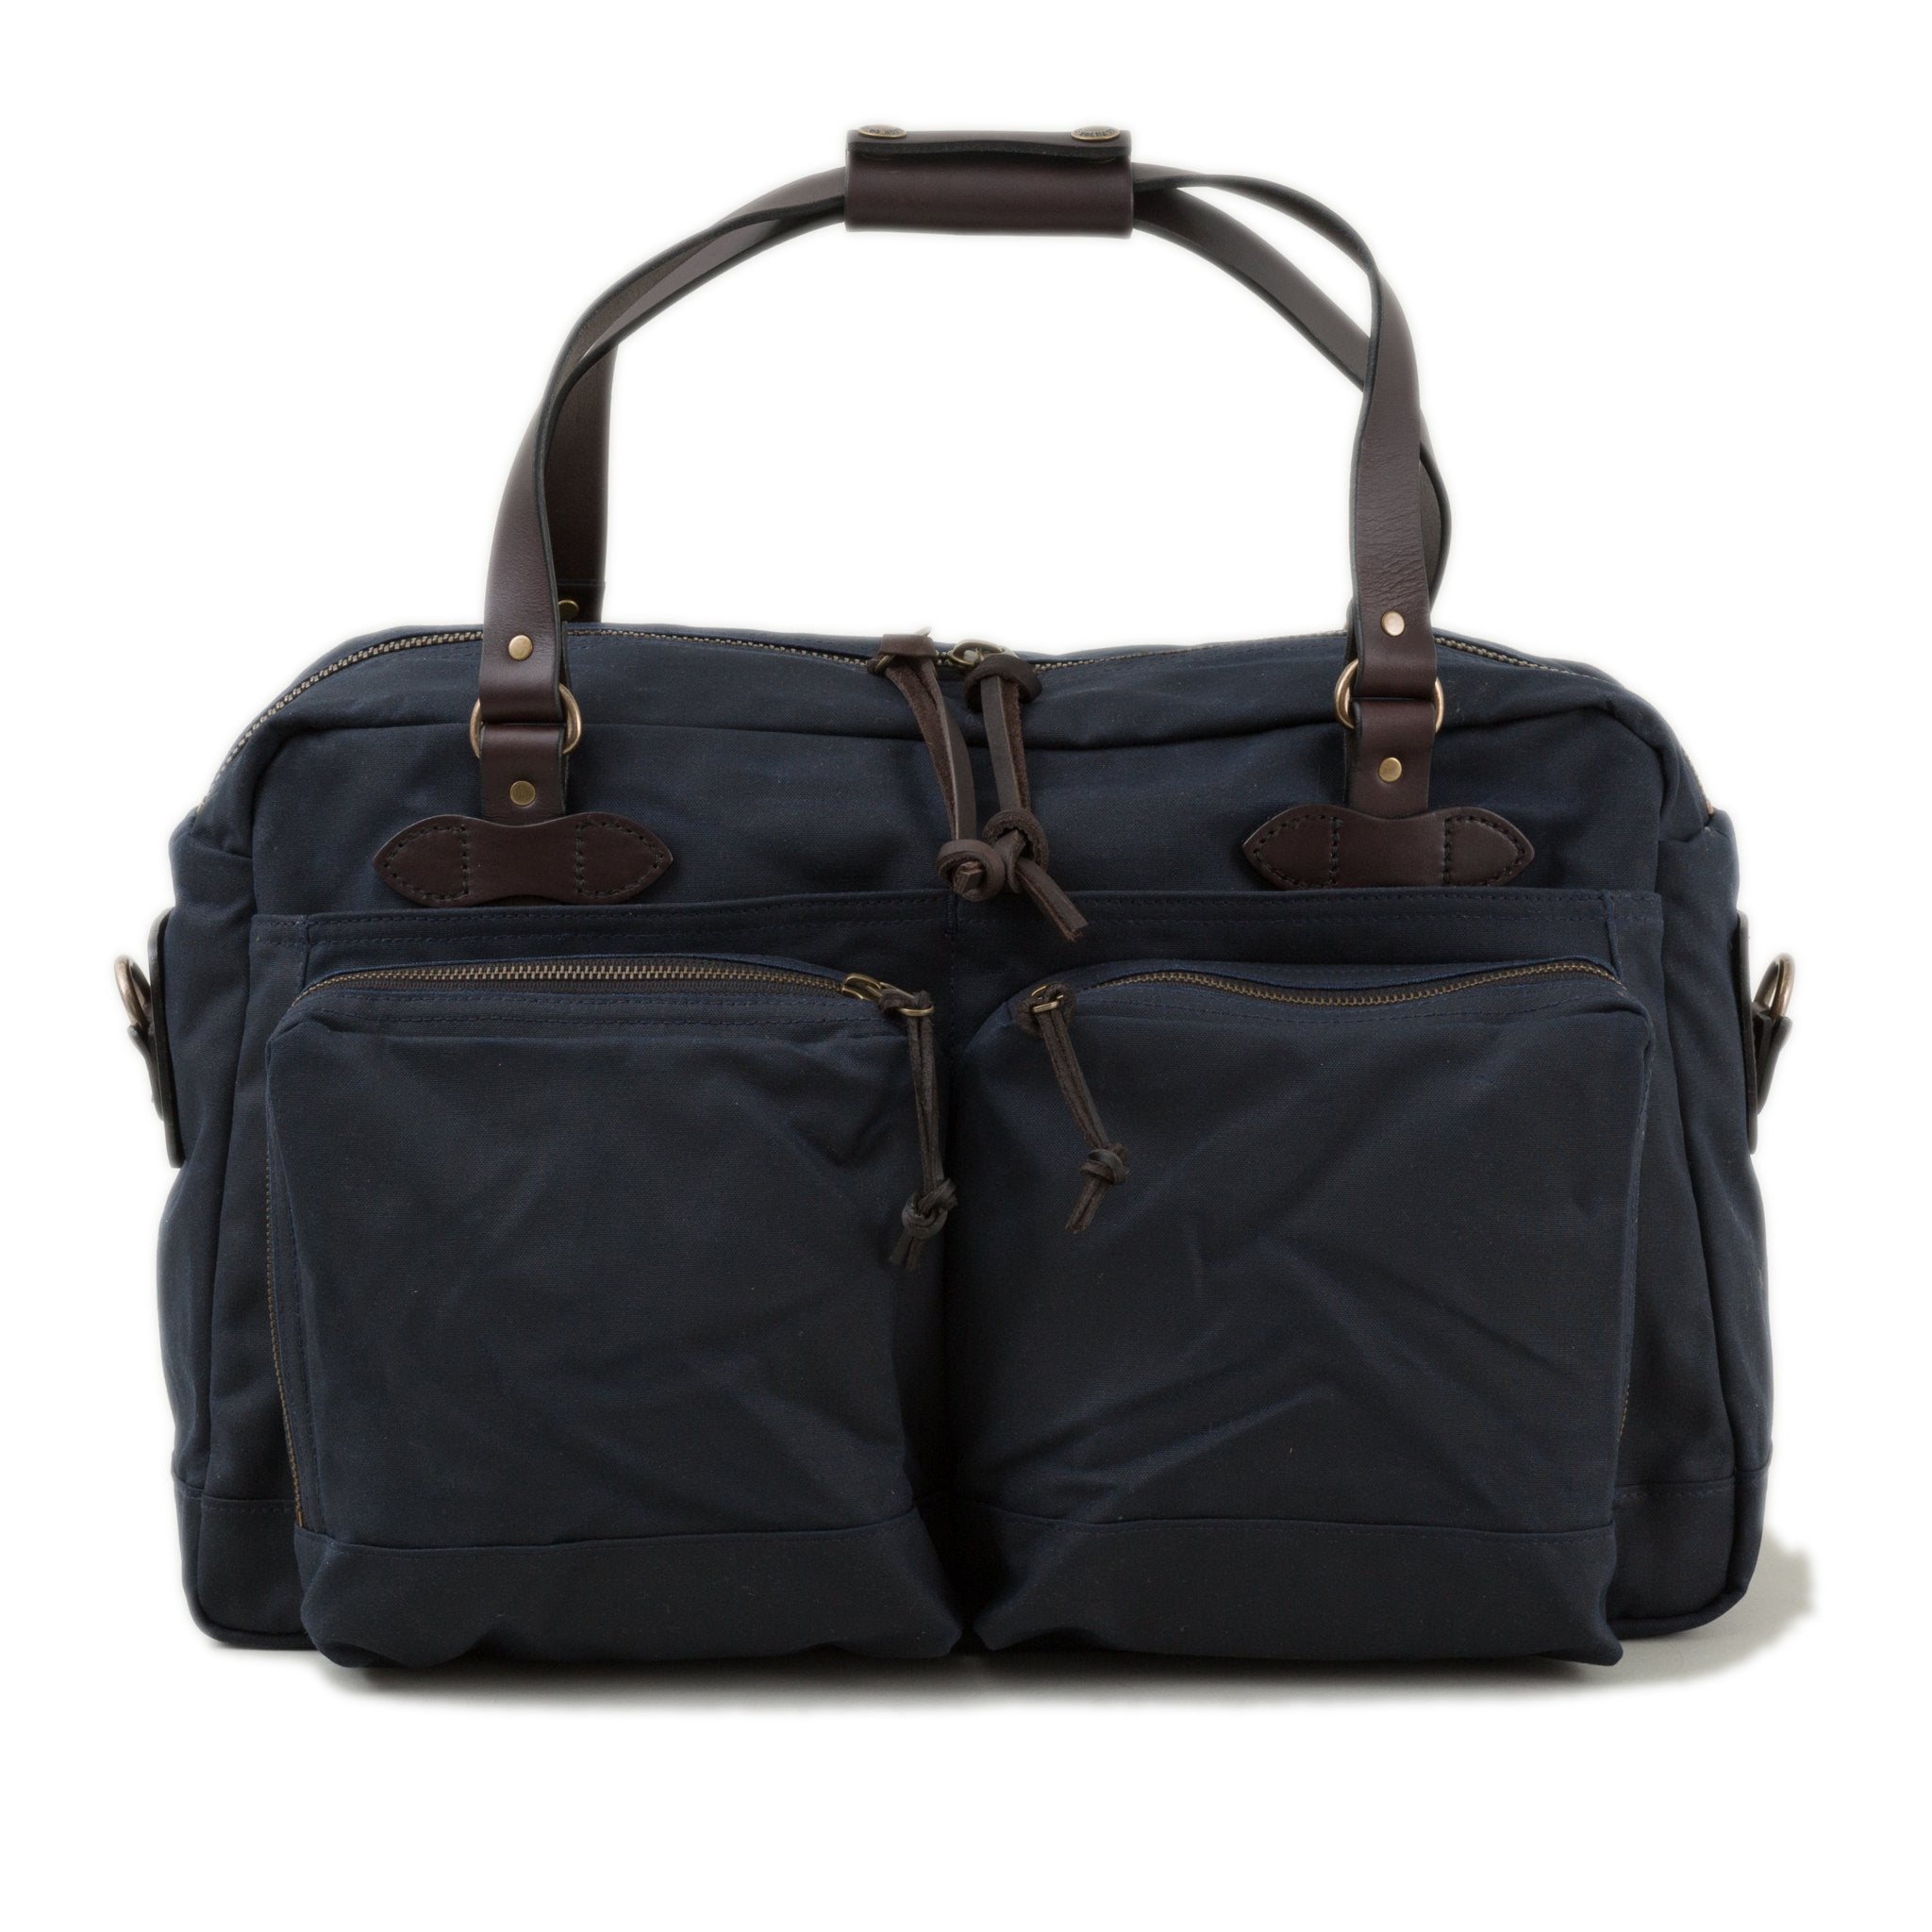 48 hour Briefcase Duffle Bag